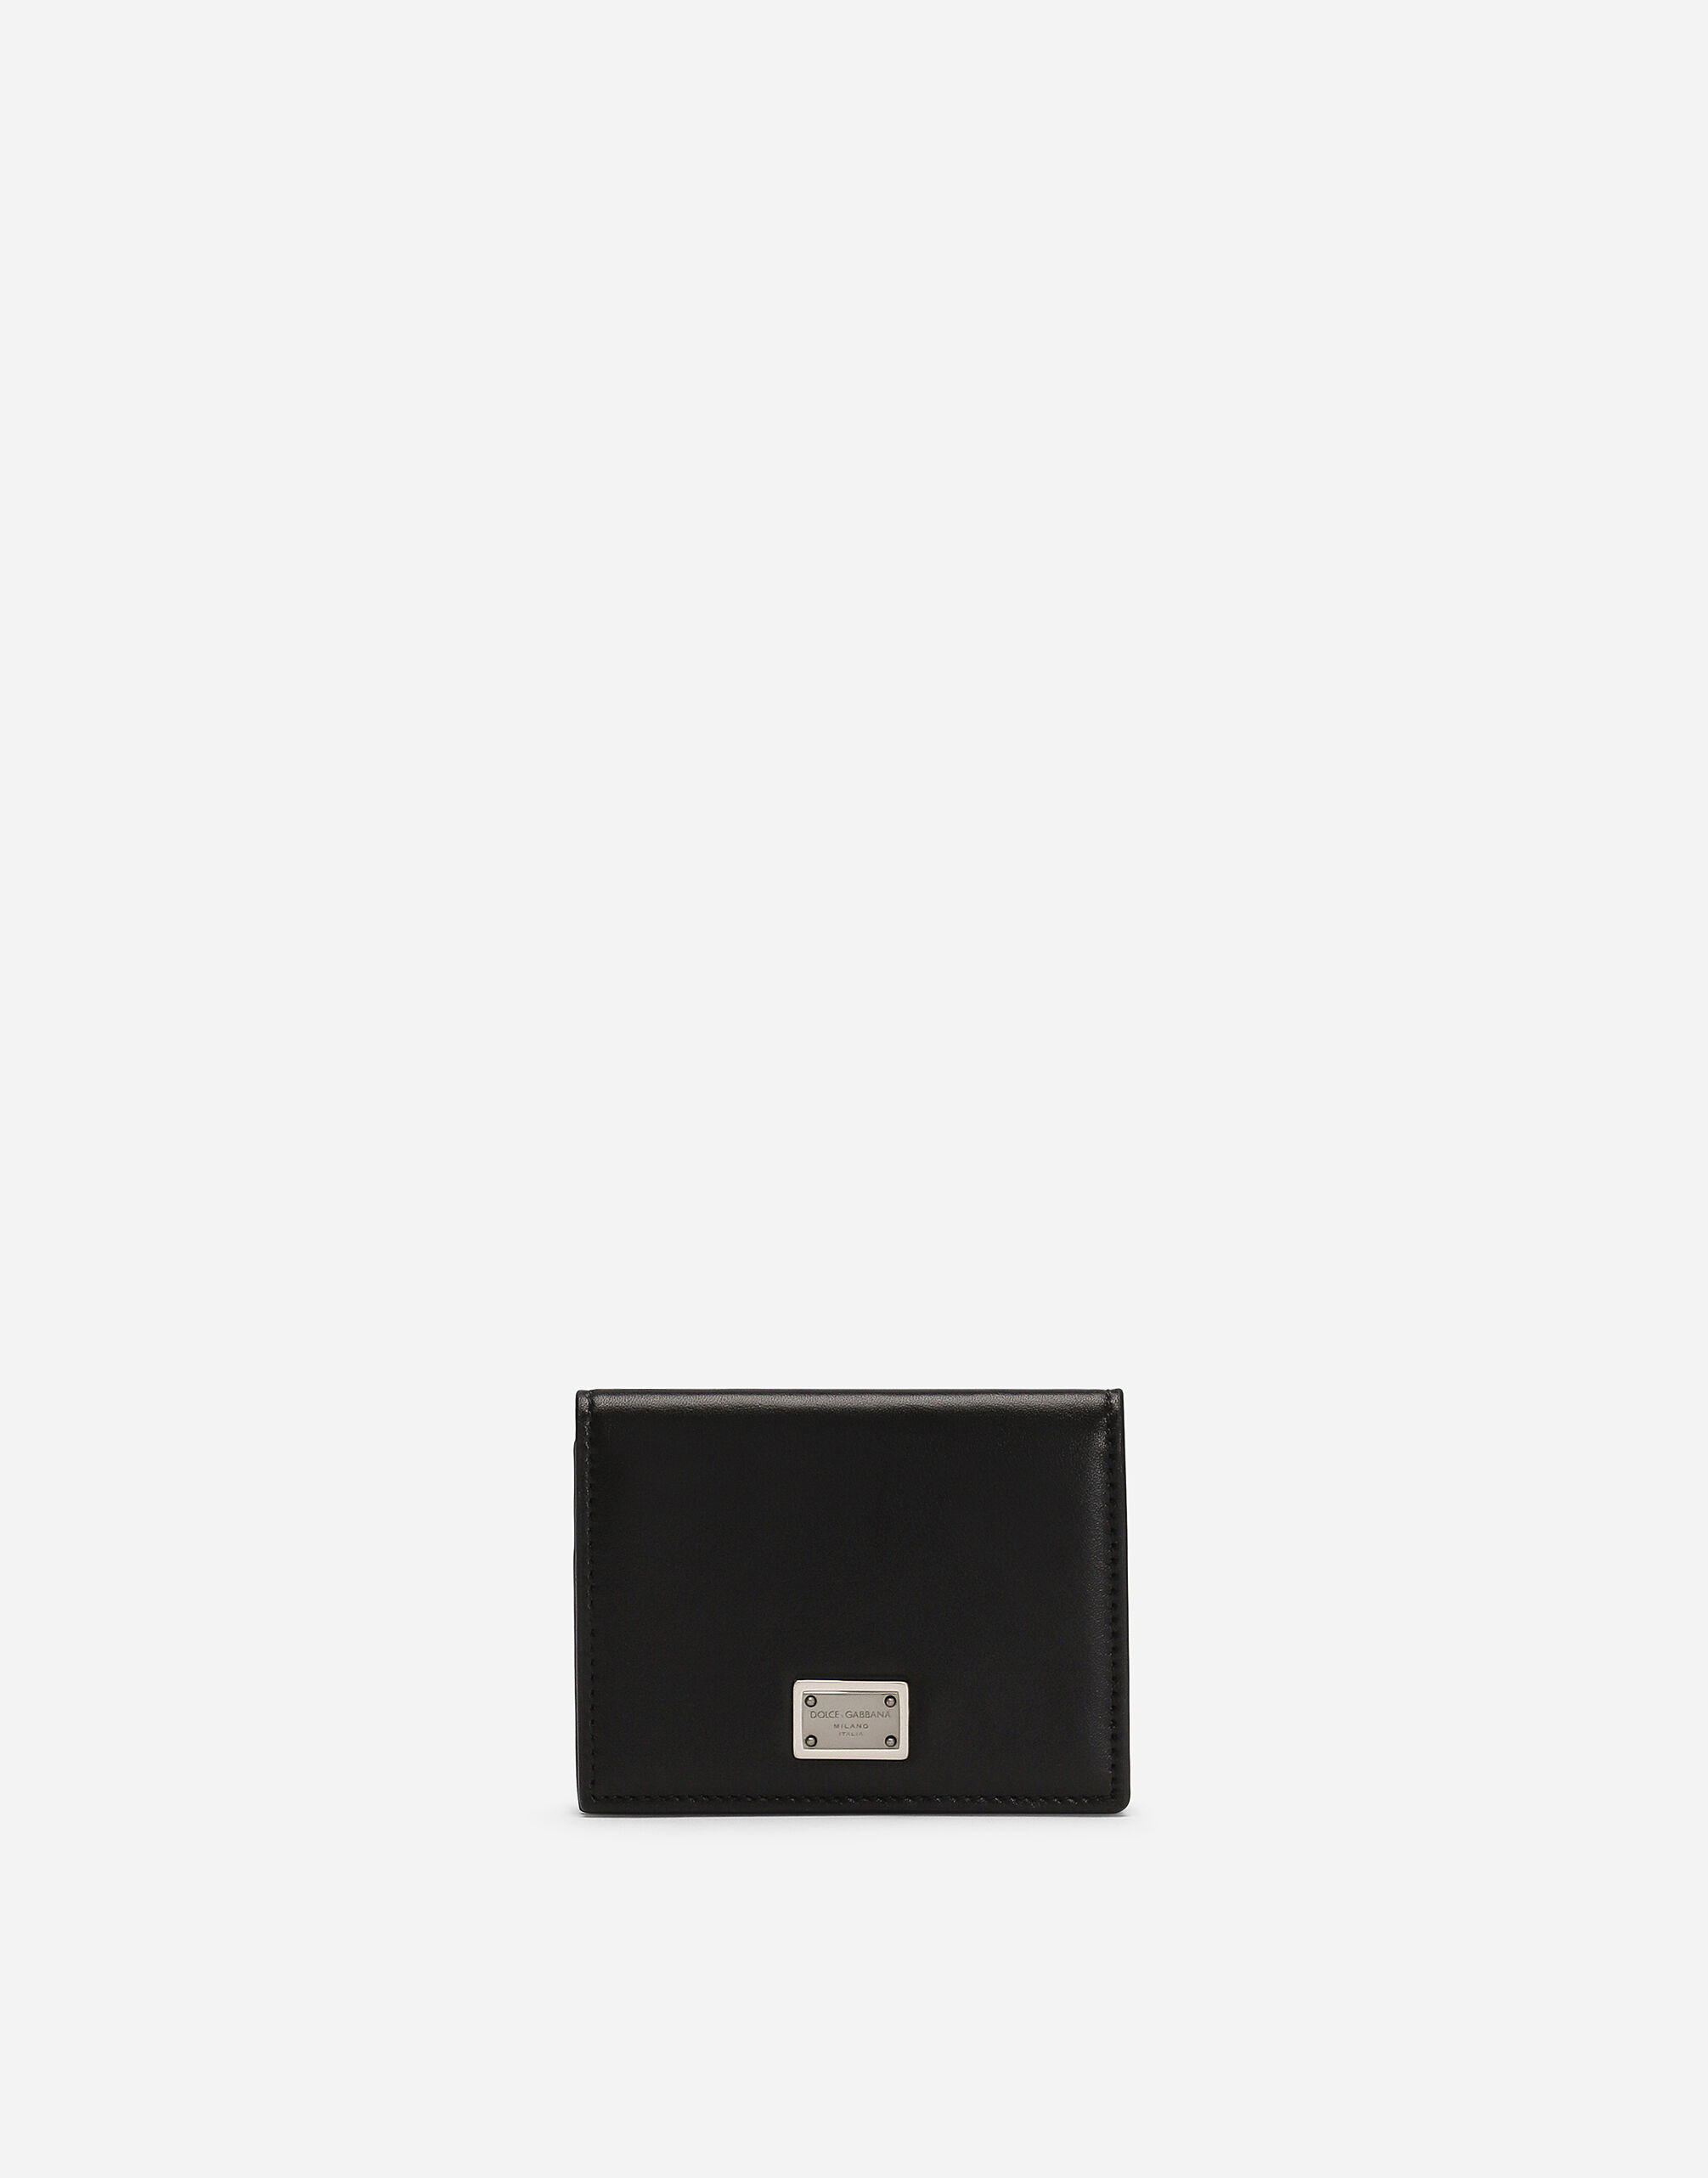 Dolce & Gabbana カードケース カーフスキン 日本限定 マルチカラー BP3273AS527